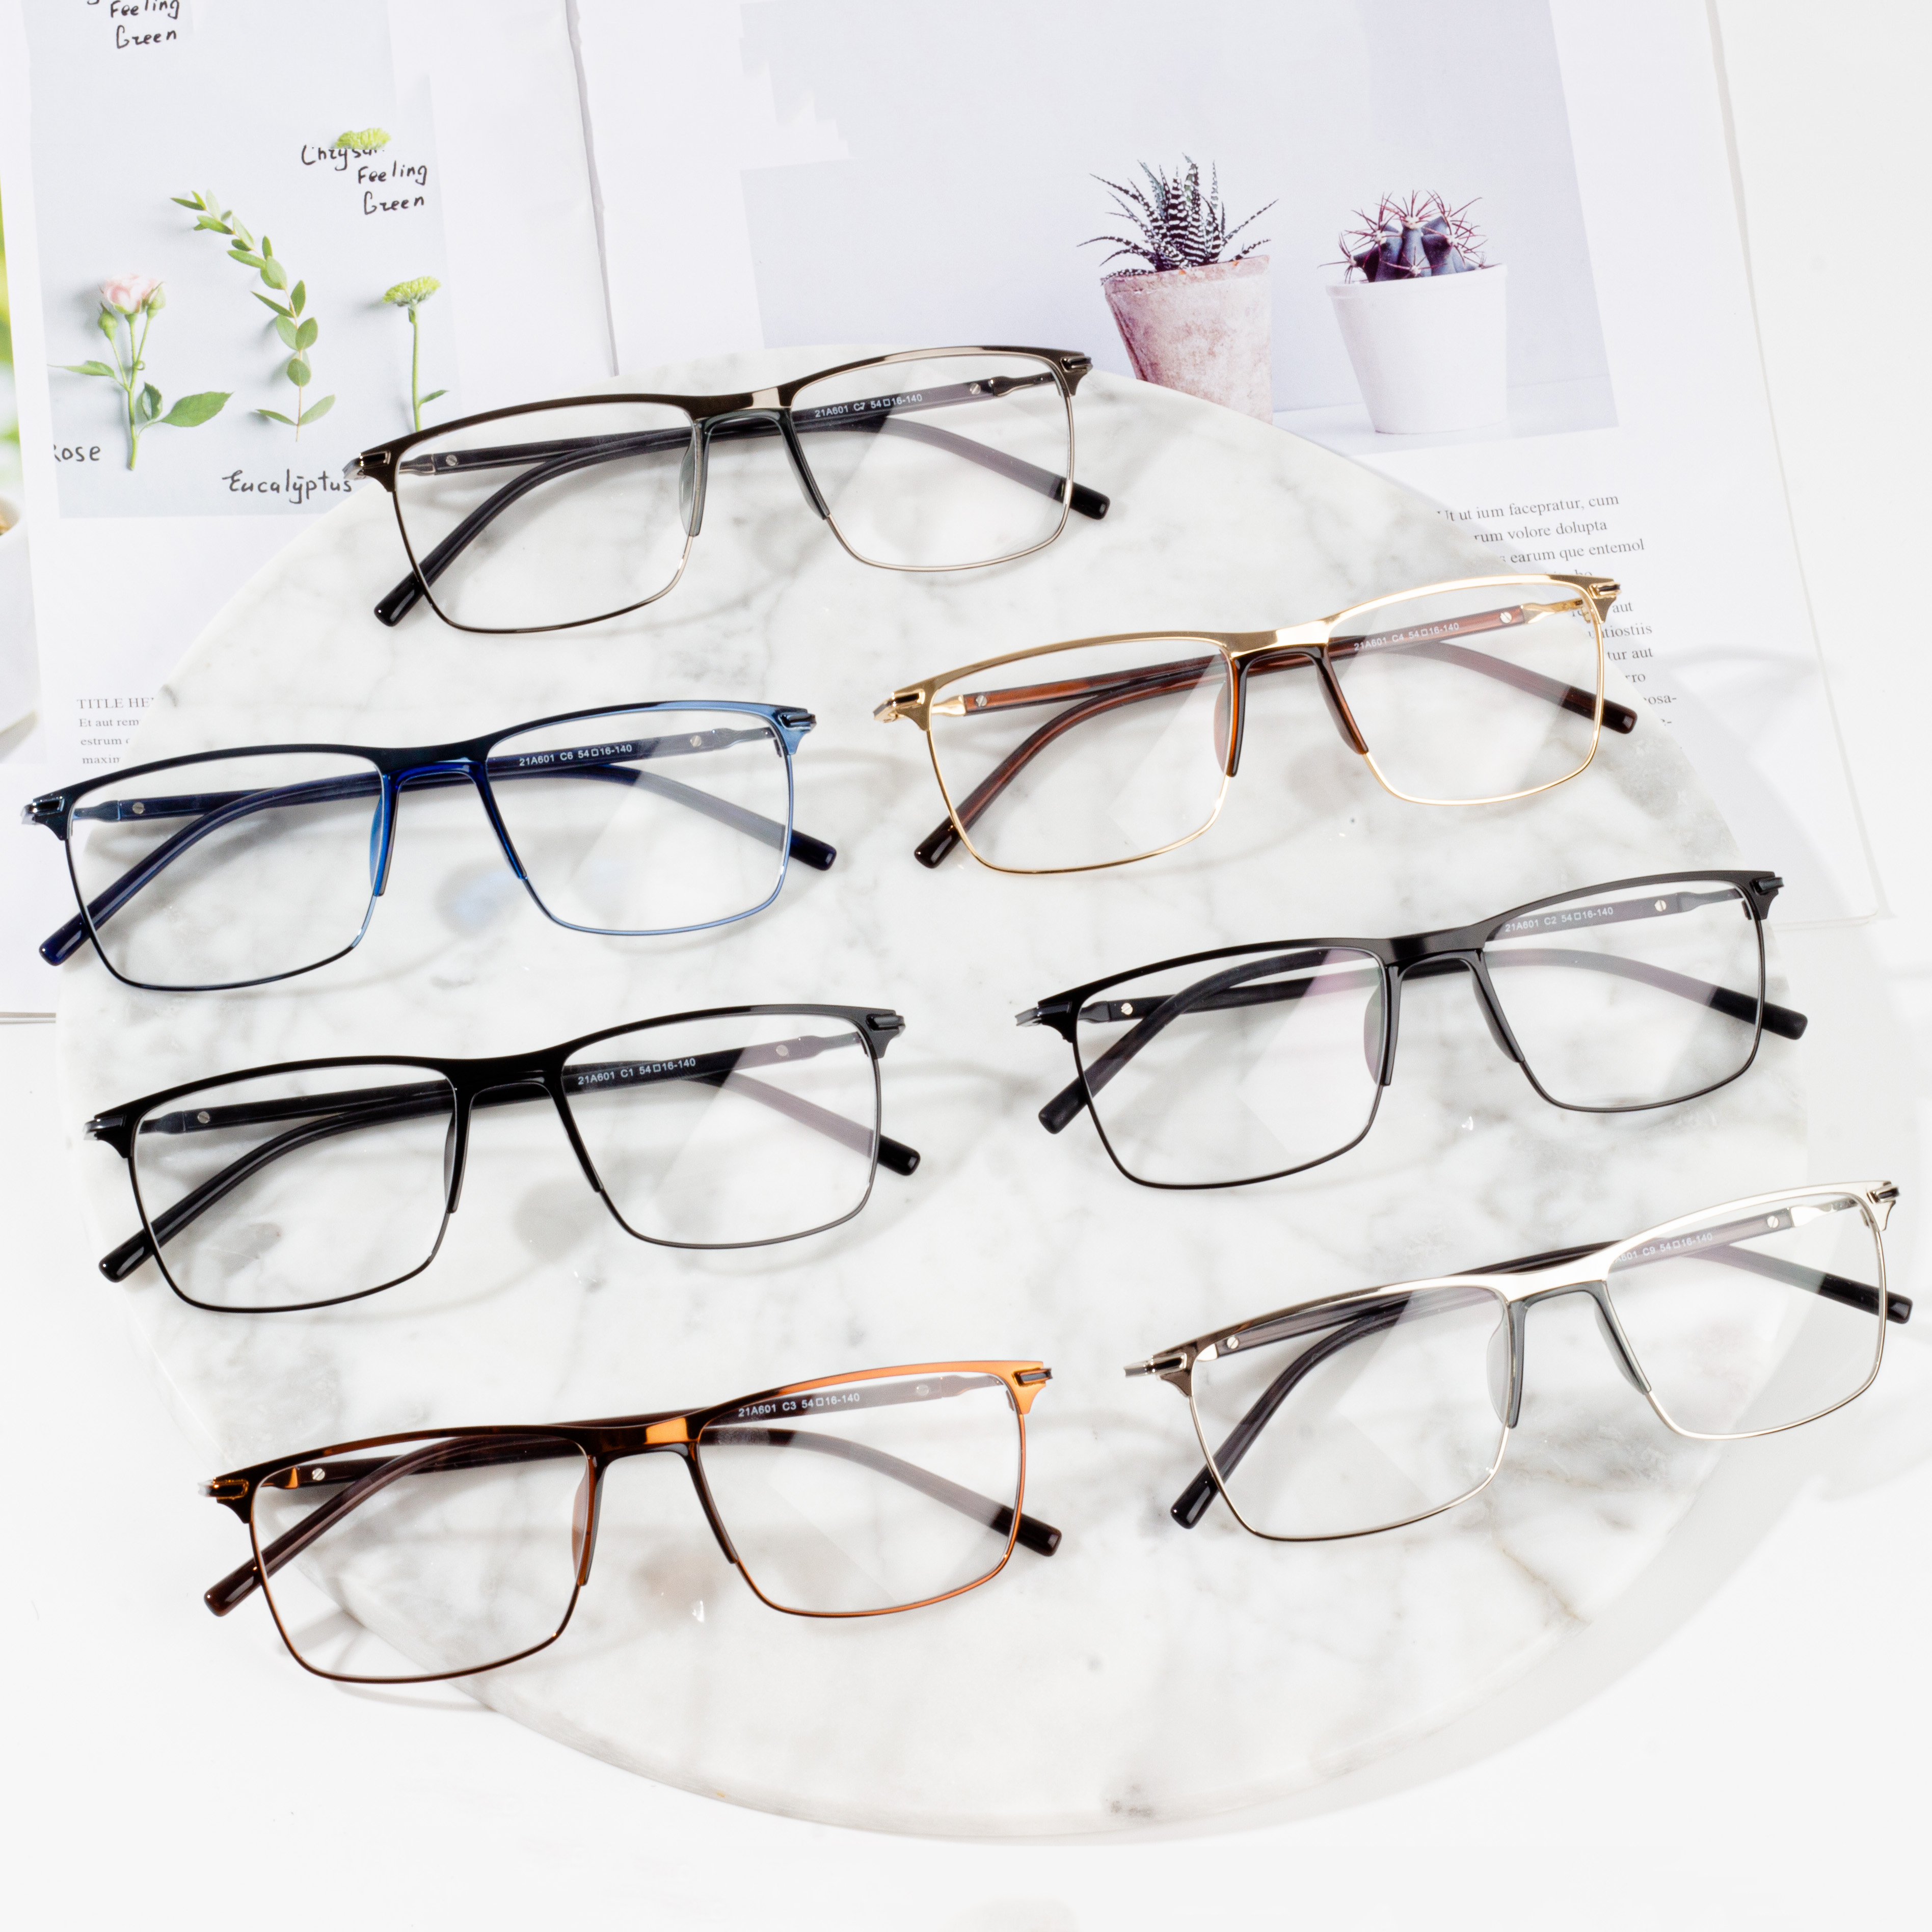 ဖက်ရှင်အလင်းမျက်မှန်ဘောင်များ ကုန်းနှီးနှာခေါင်းပြား